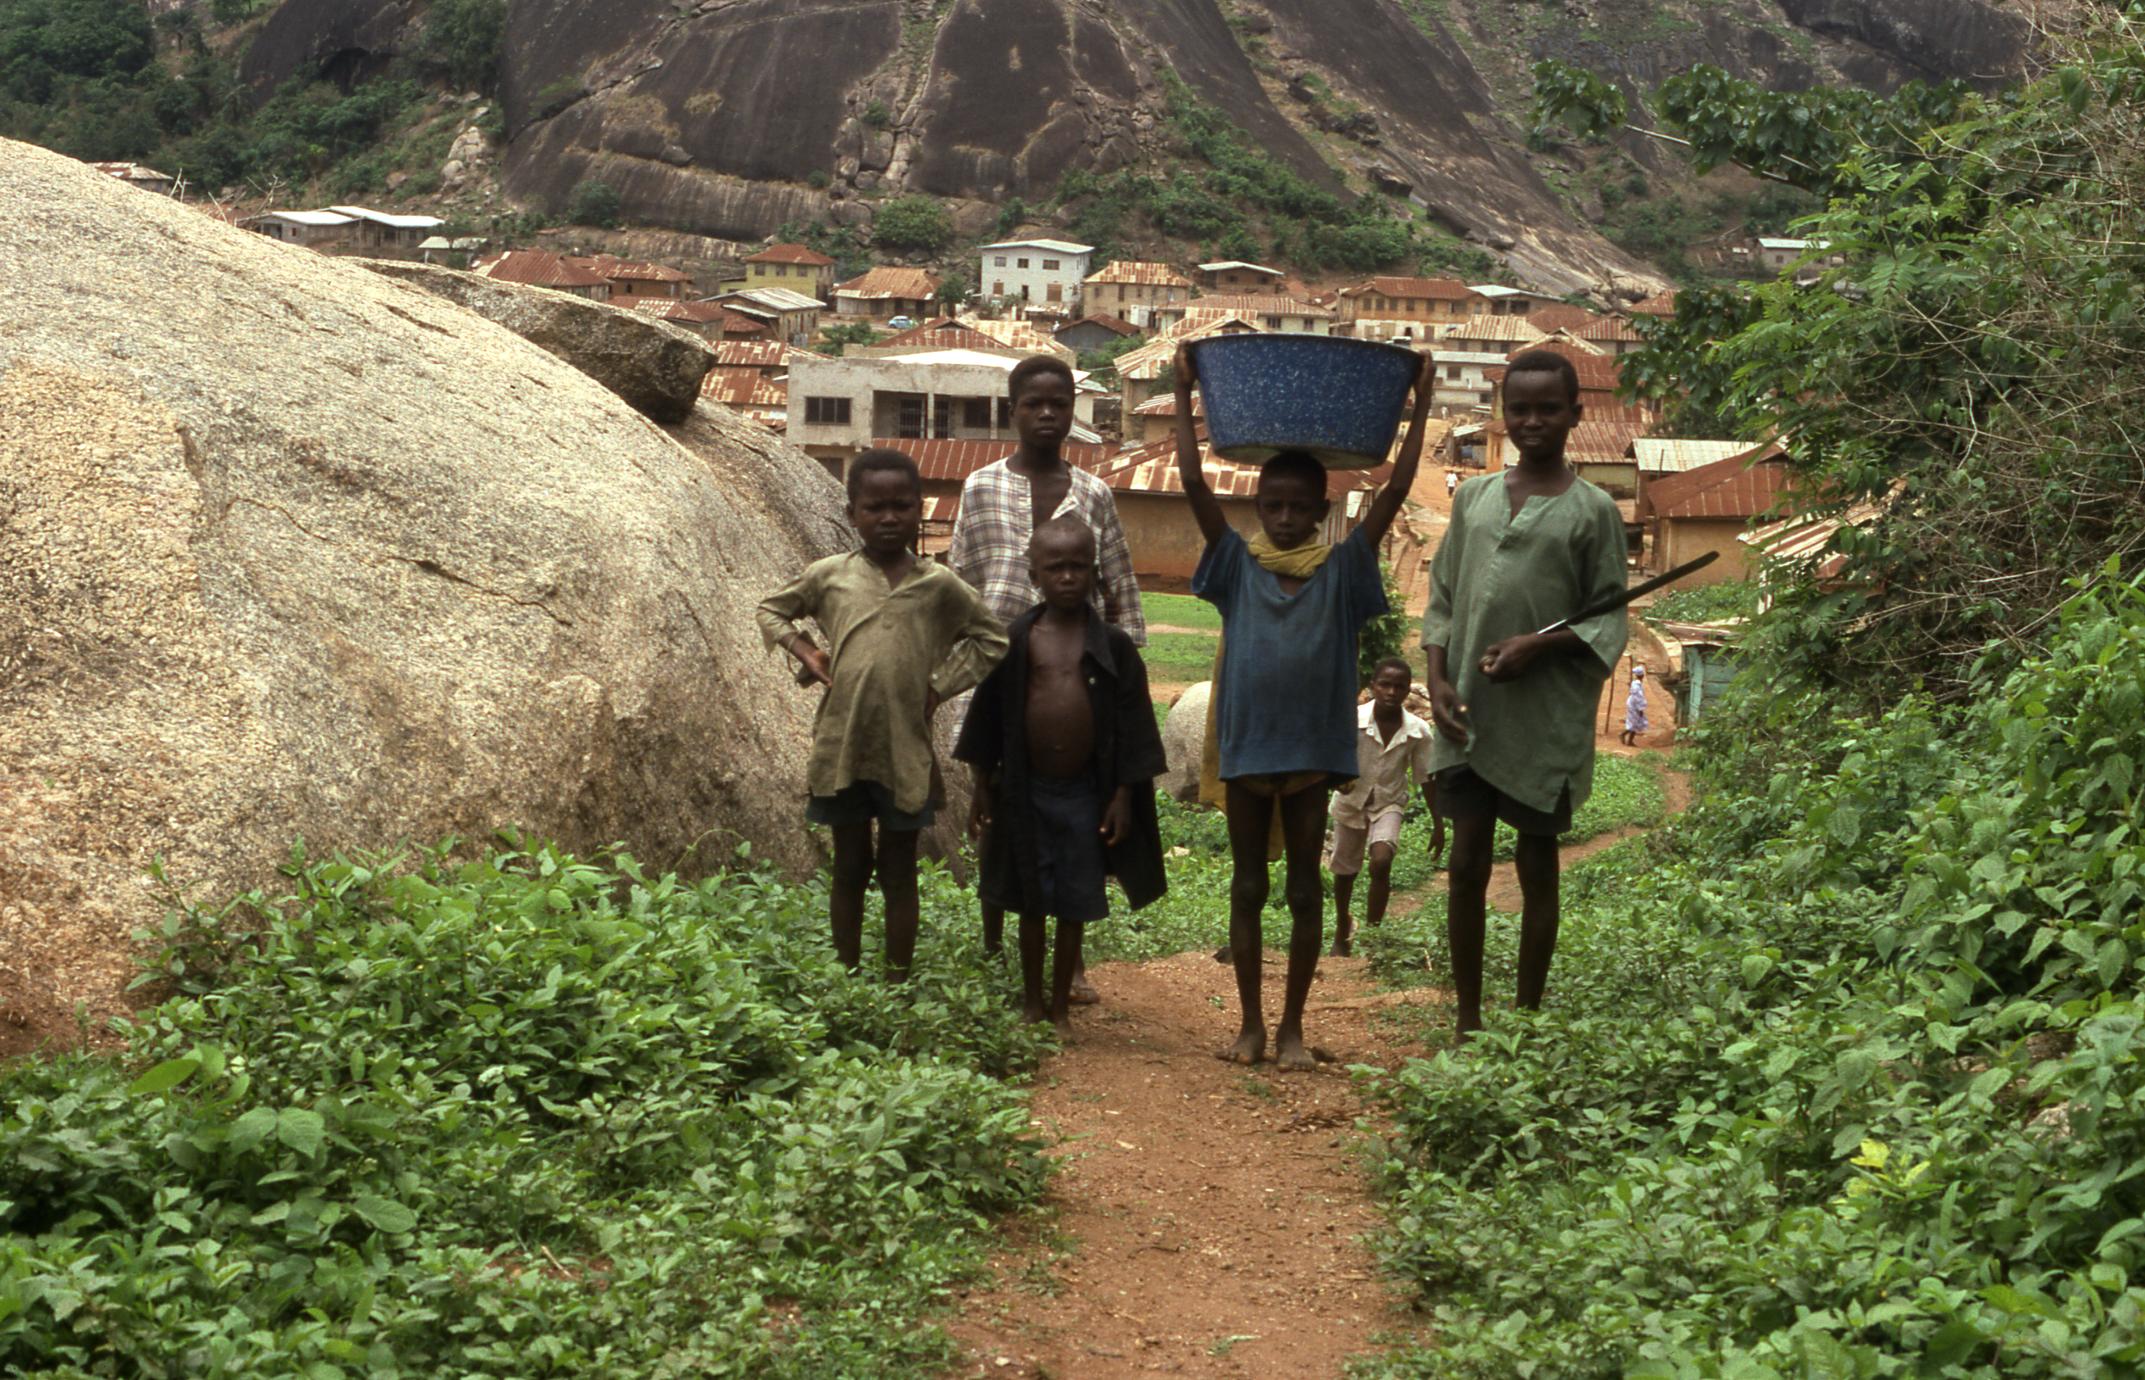 Kids on path in Idanre